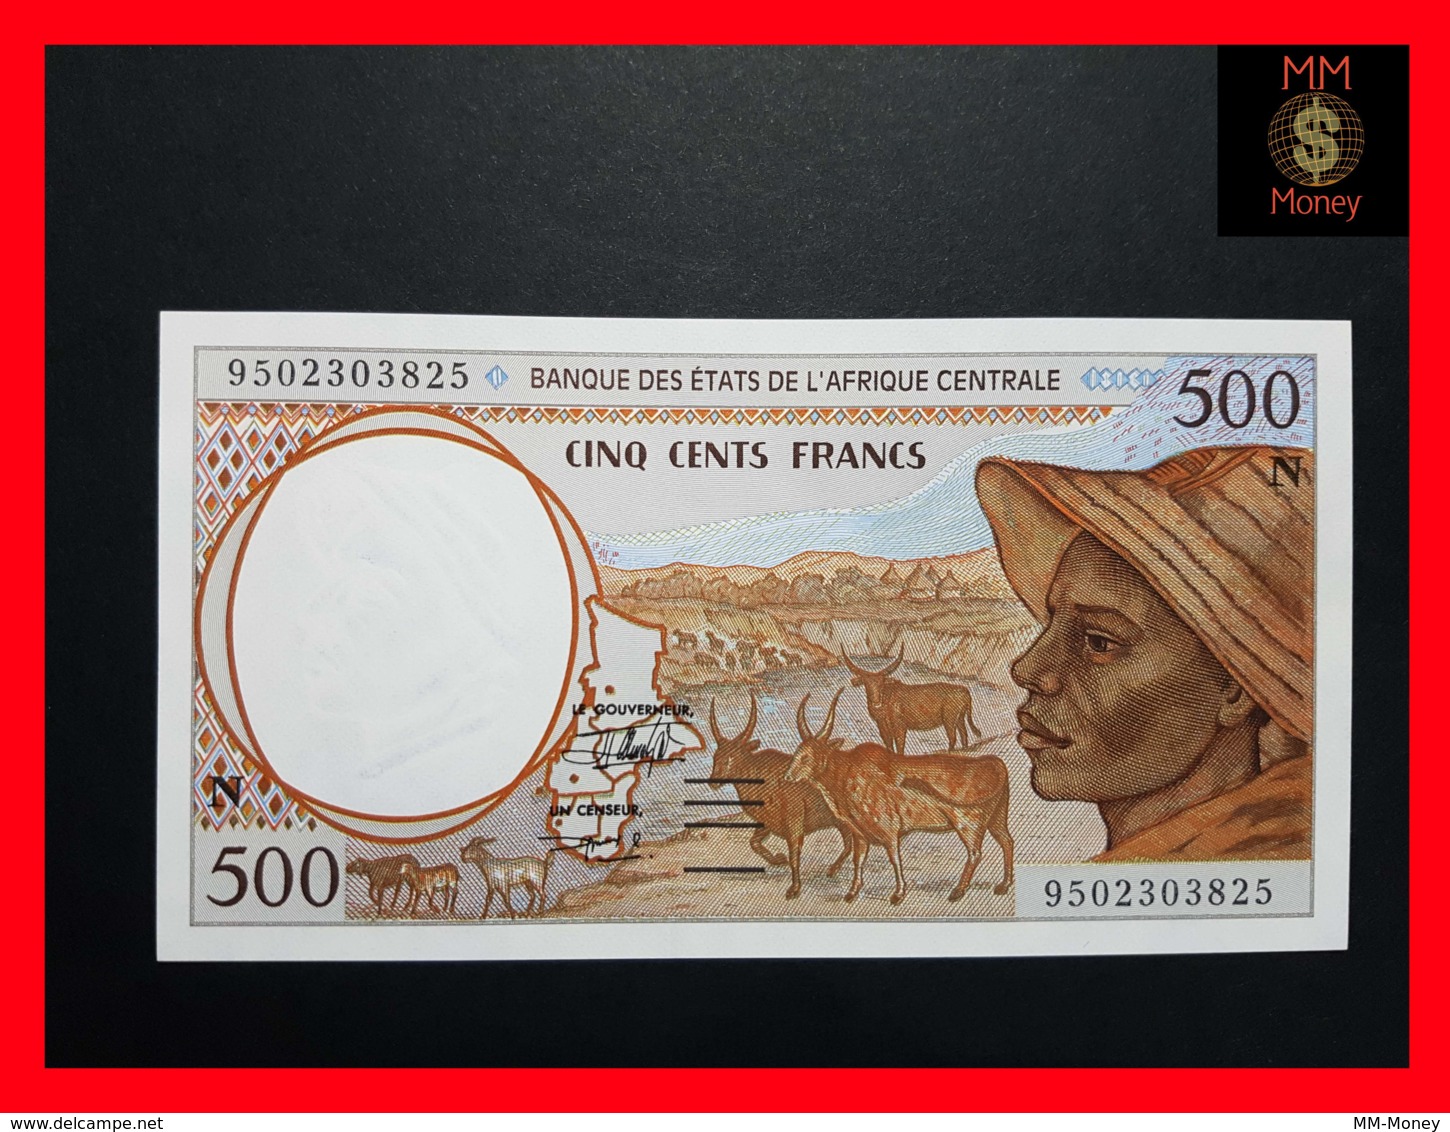 CENTRAL AFRICAN STATES  "N"  EQUATORIAL GUINEA 500 Francs 1995  P. 501 N C  UNC - États D'Afrique Centrale